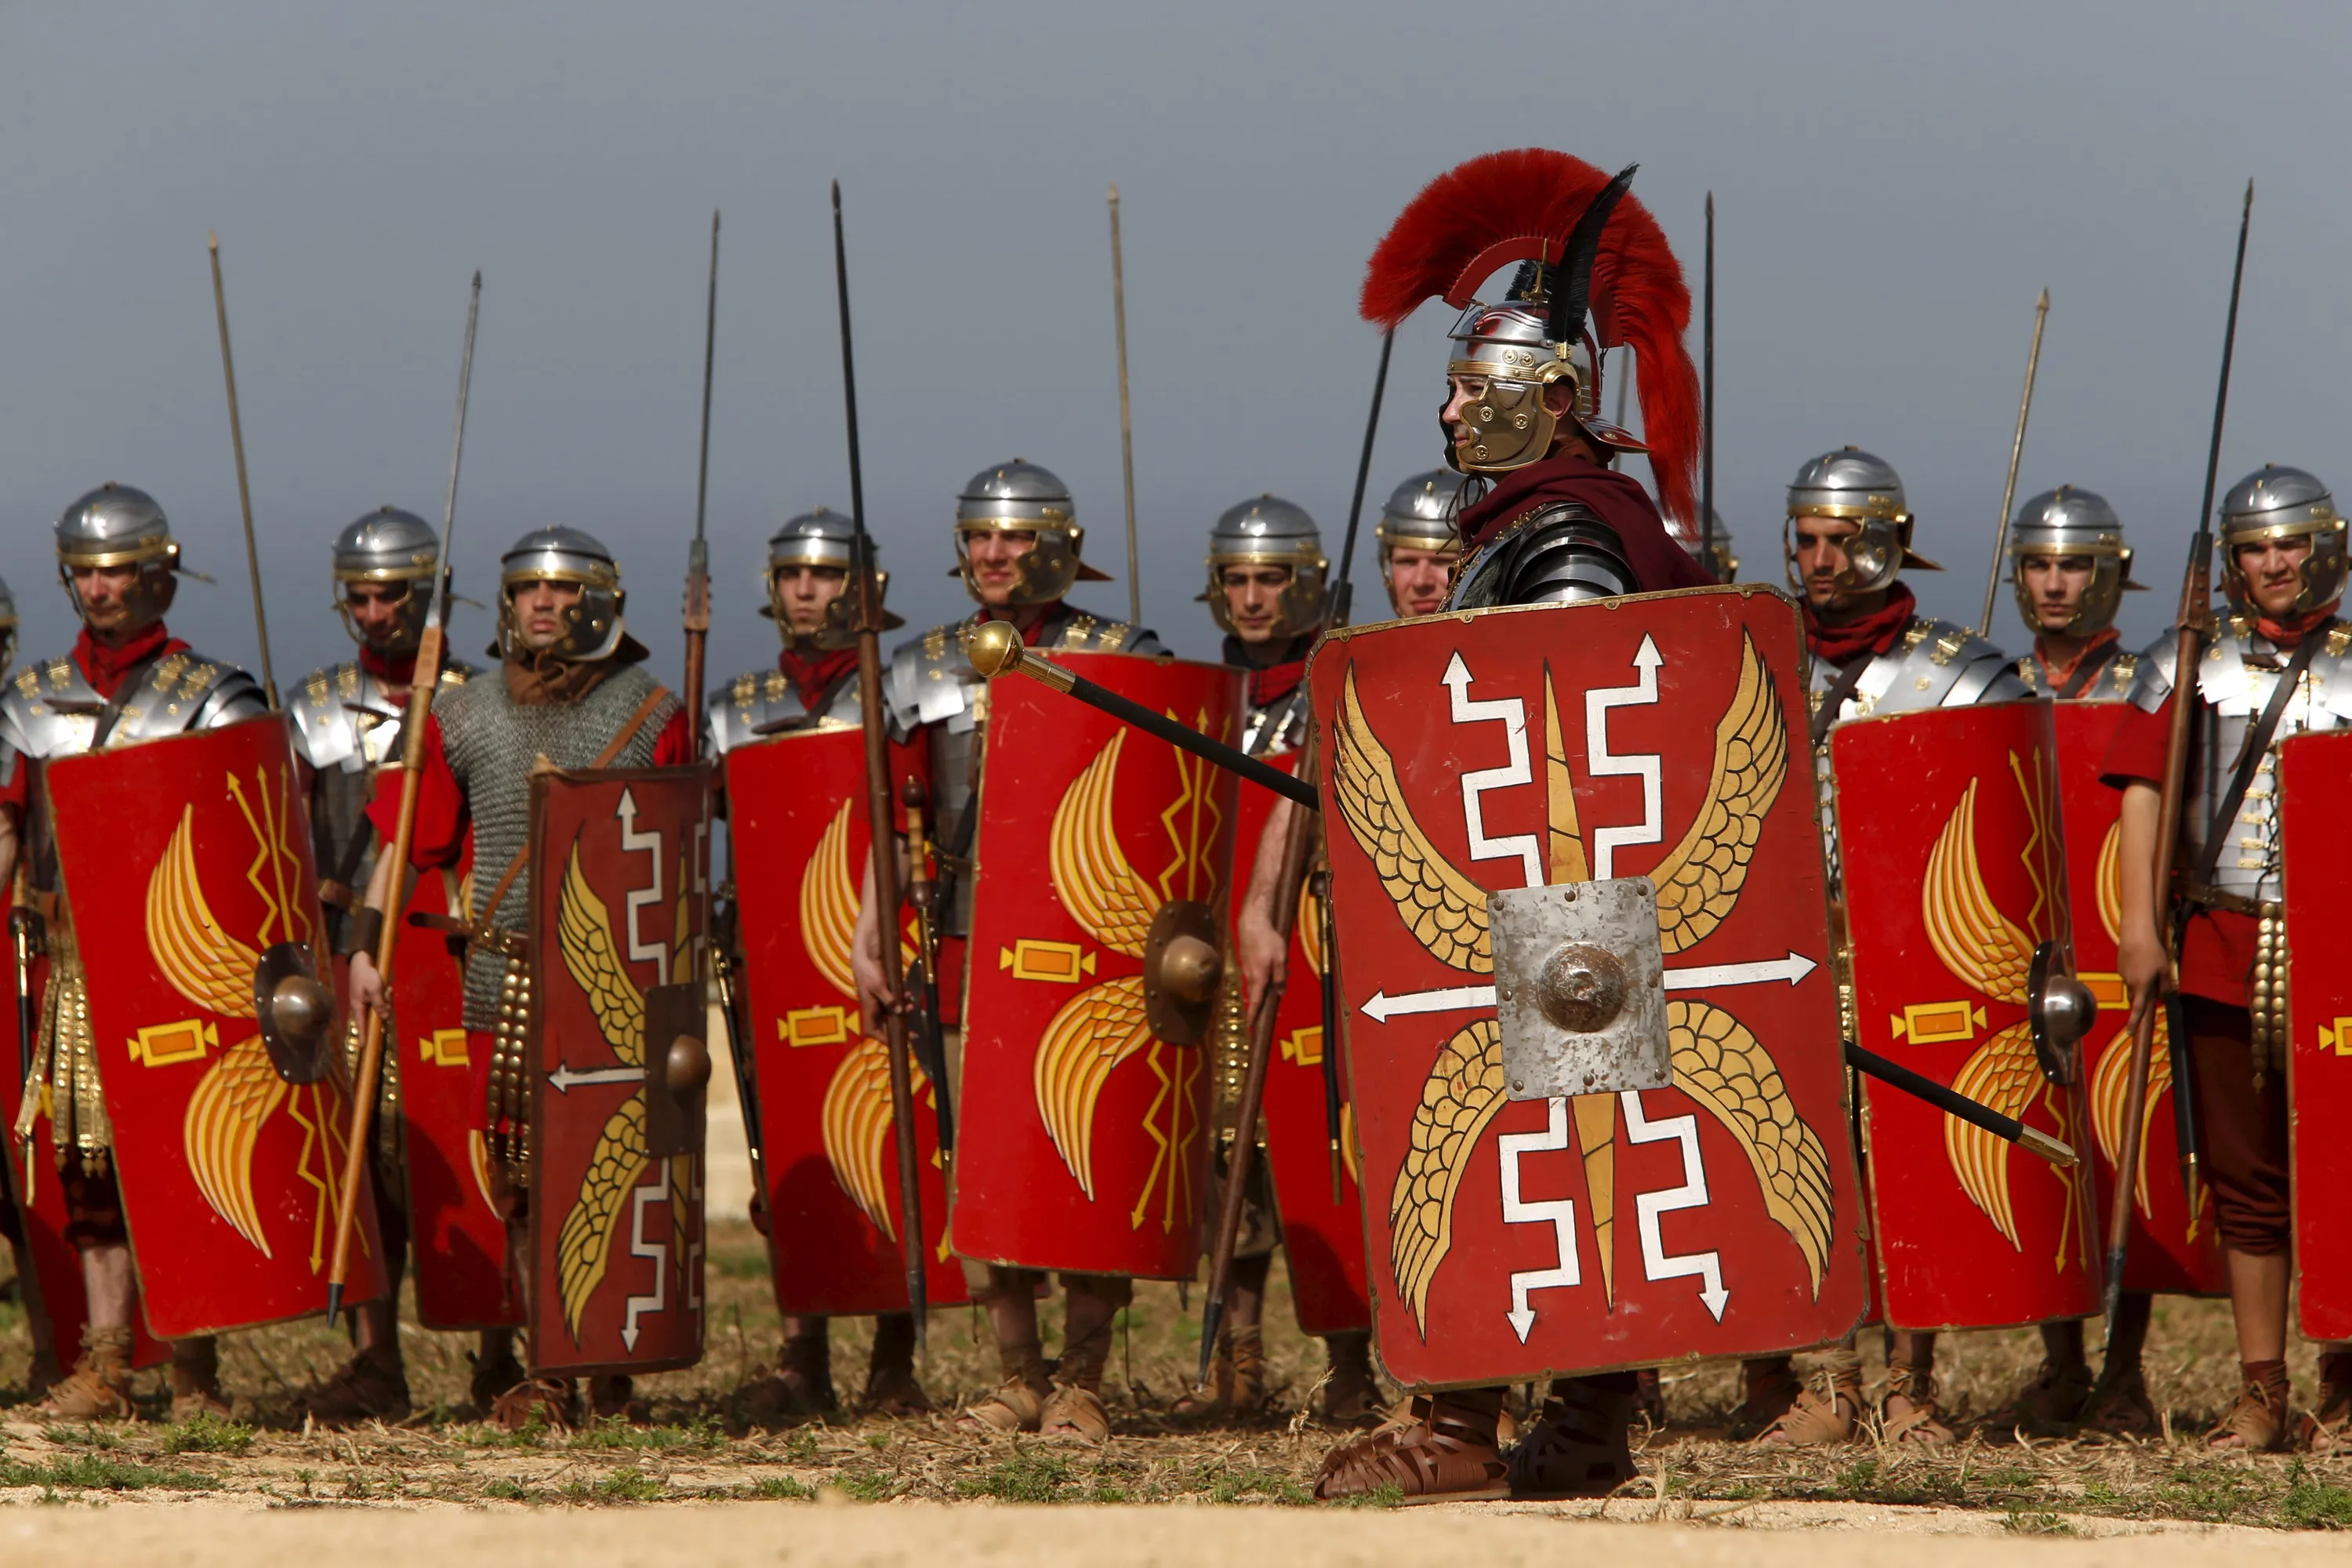 Армия древнего Рима Легион